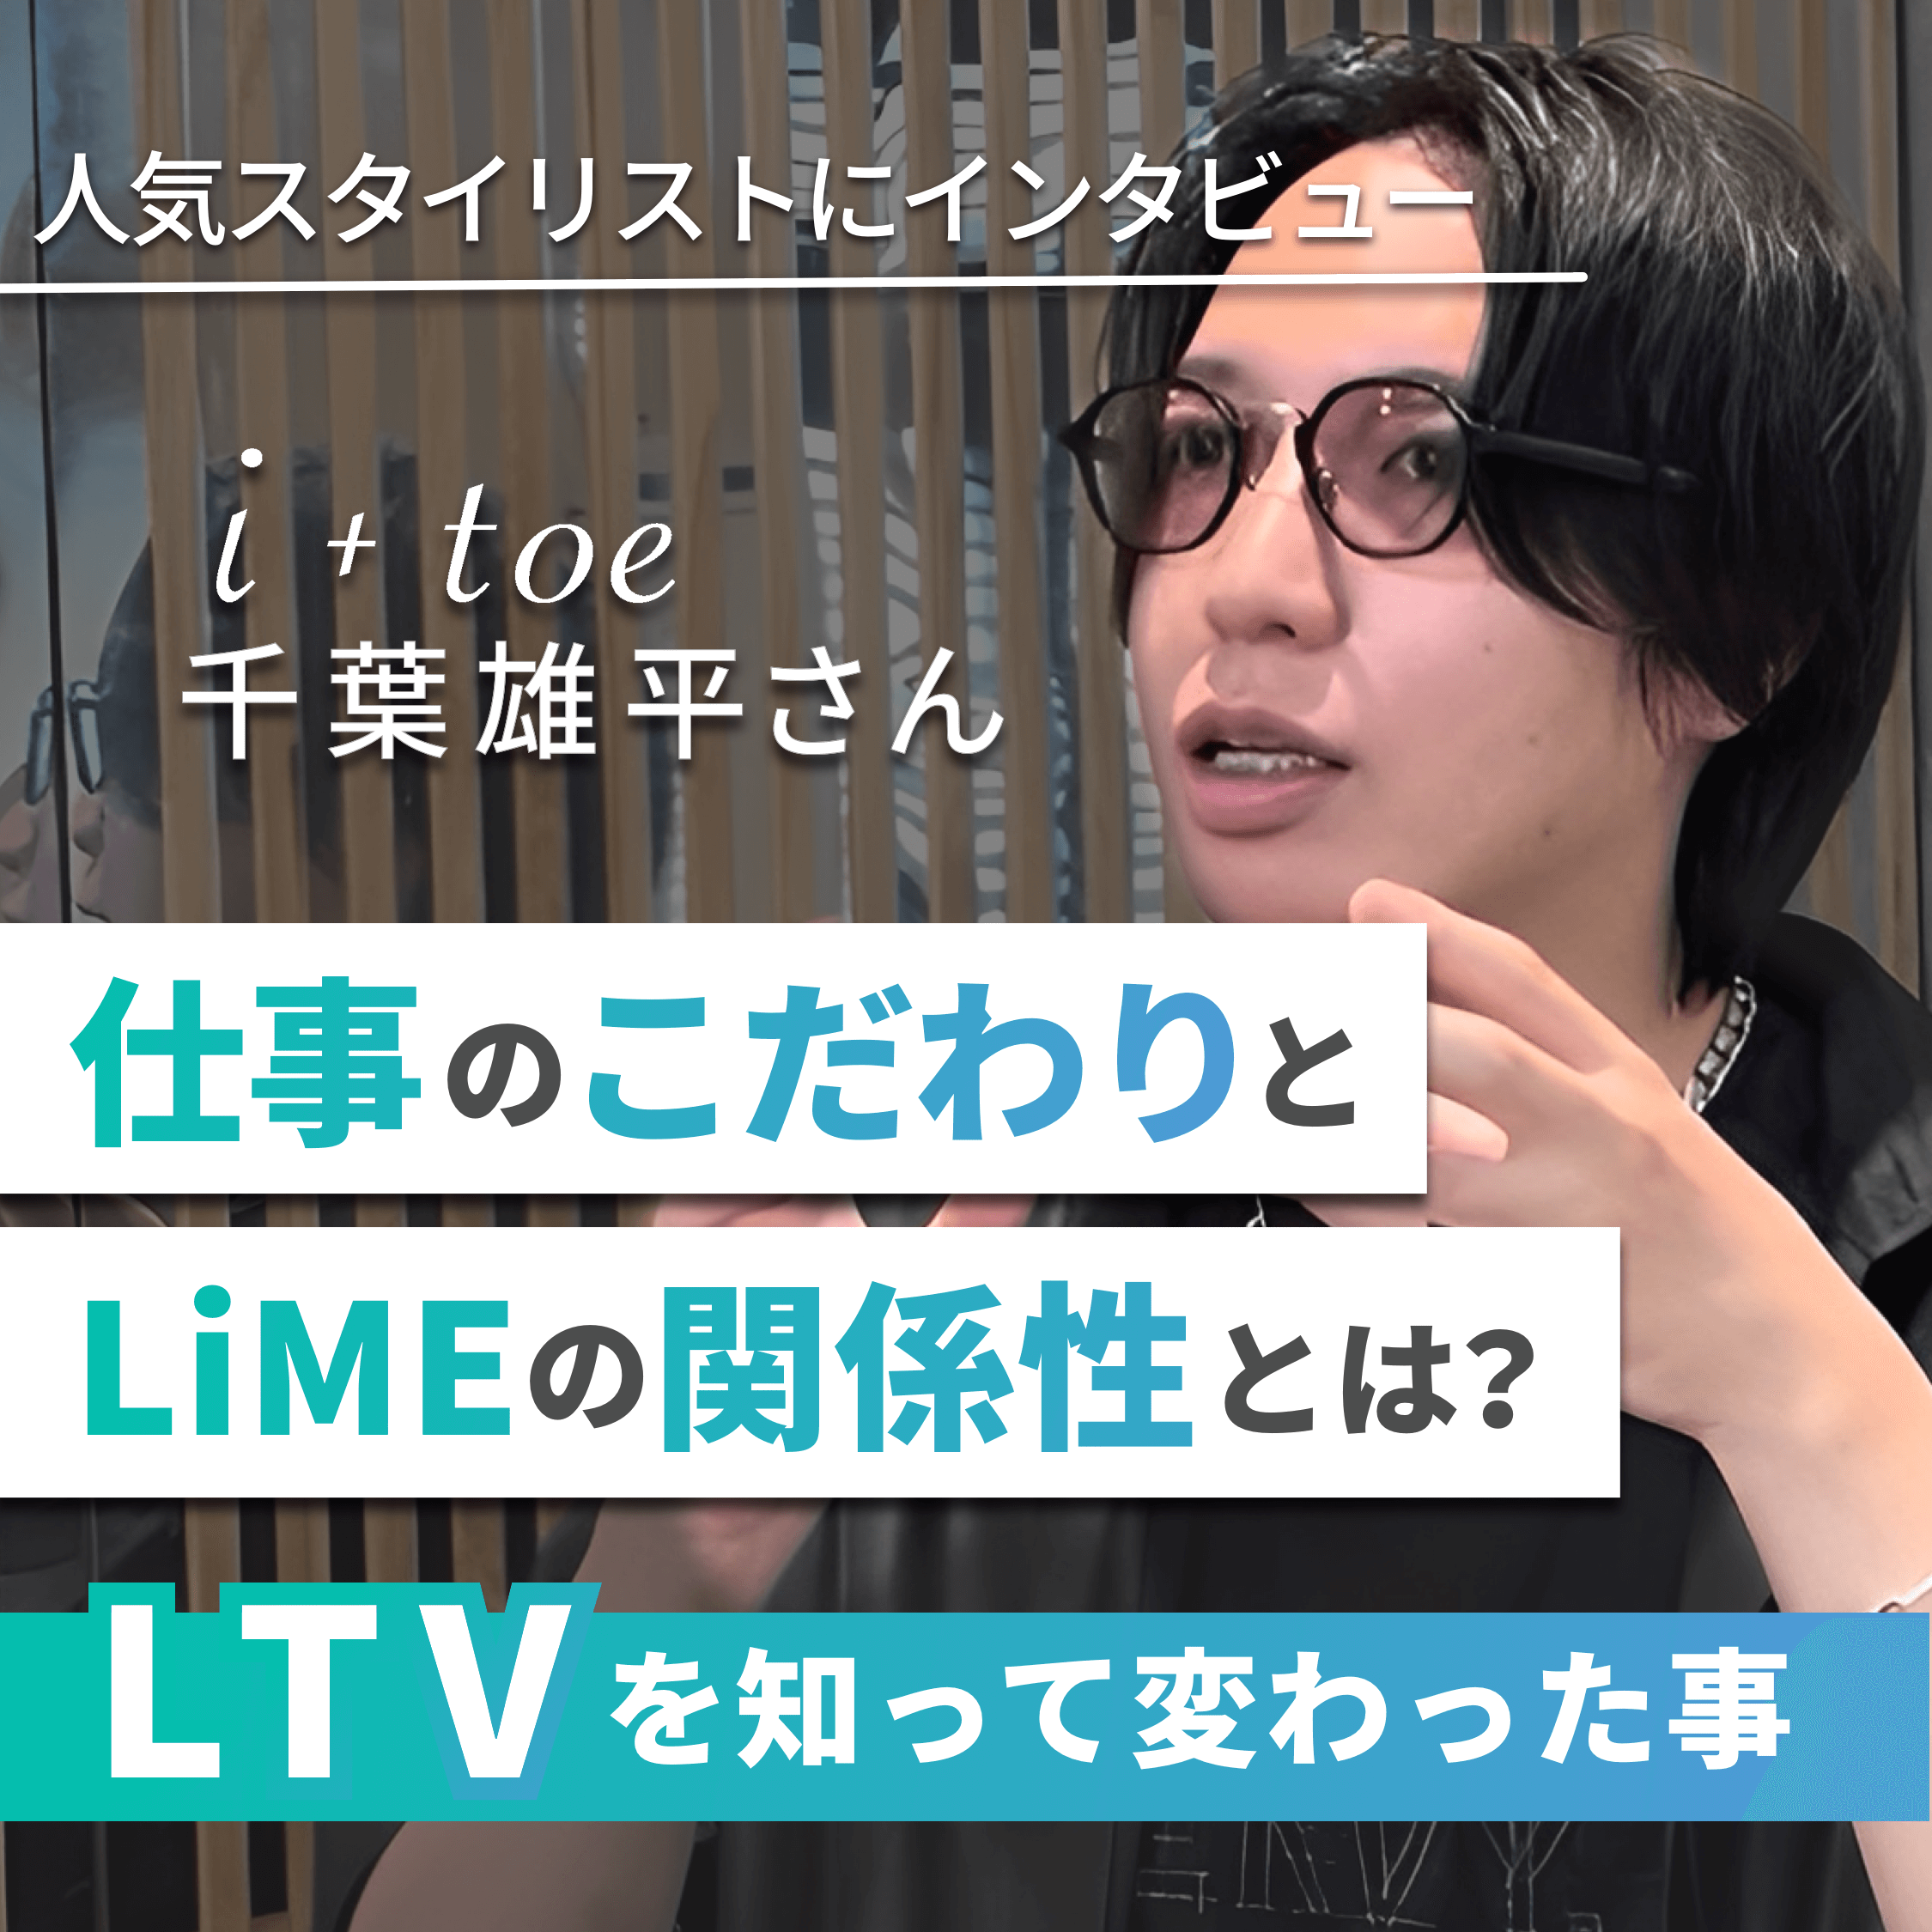 人気スタイリストにインタビュー　仕事のこだわりとLiMEの関係性とは？　LTVを知って変わった事i+toe千葉雄平さん